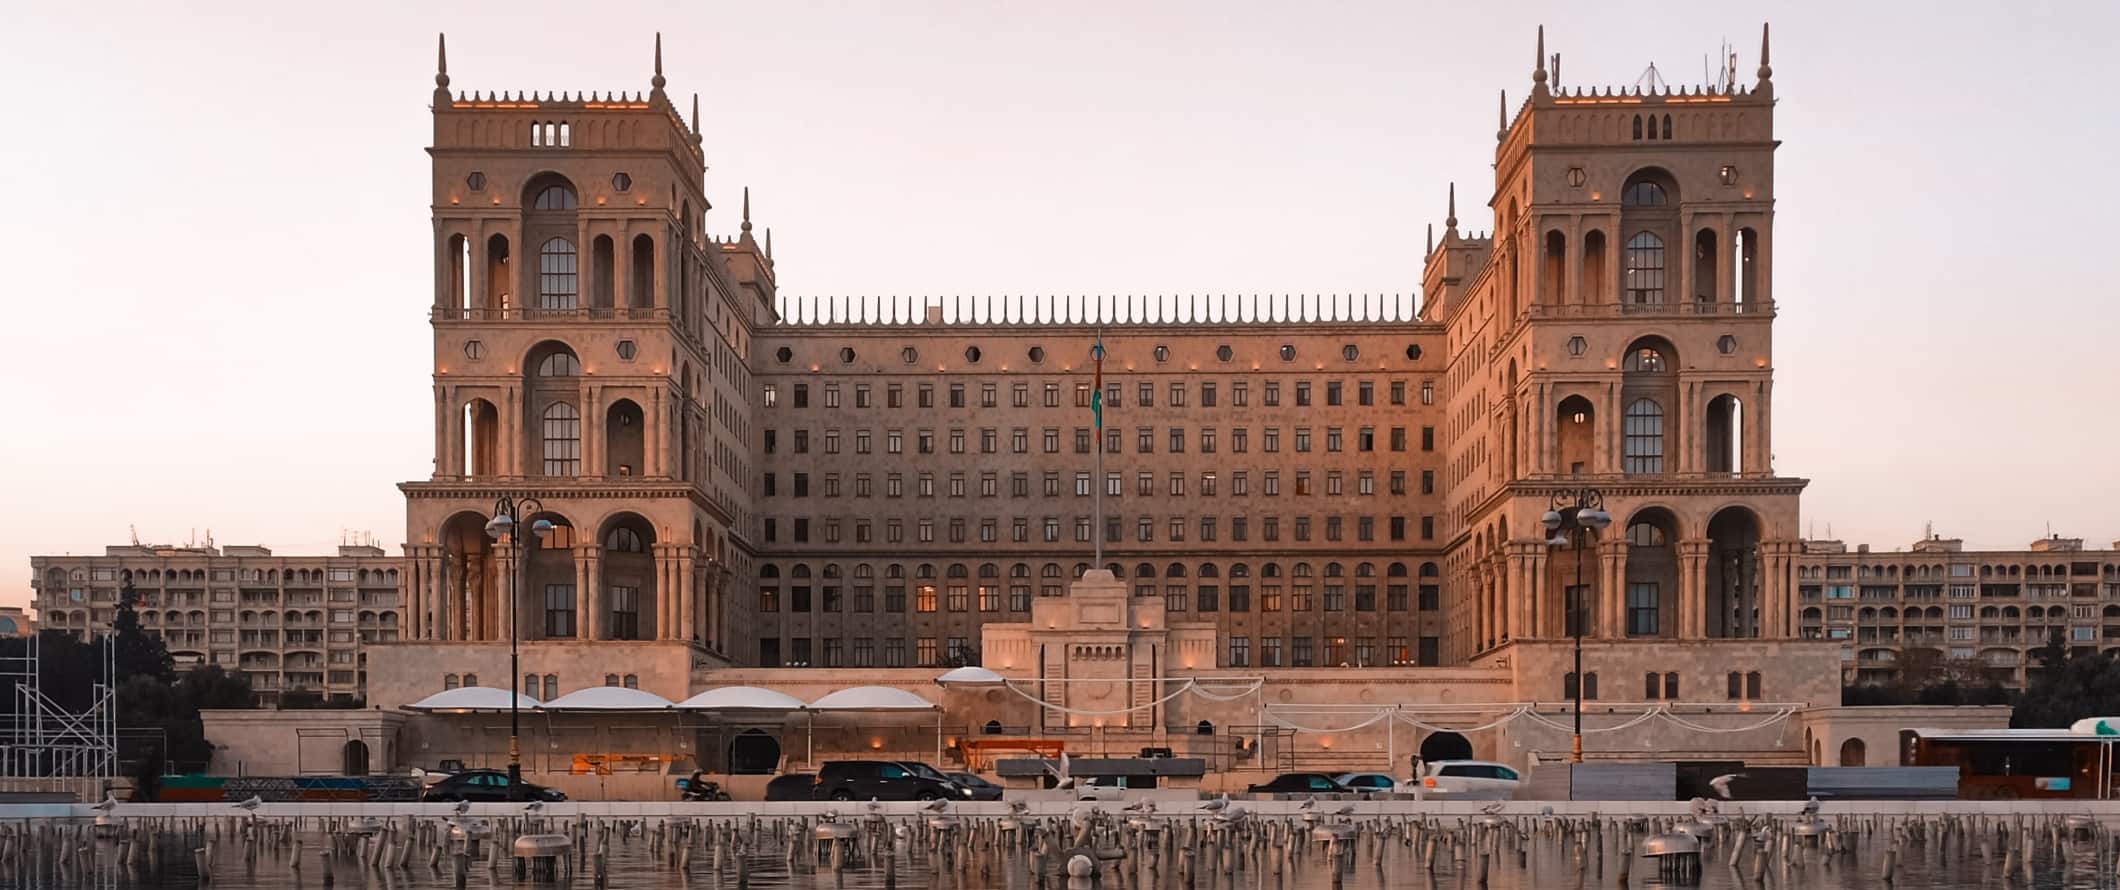 Impressionante edifício histórico do governo em Baku, Azerbaijão, ao pôr do sol